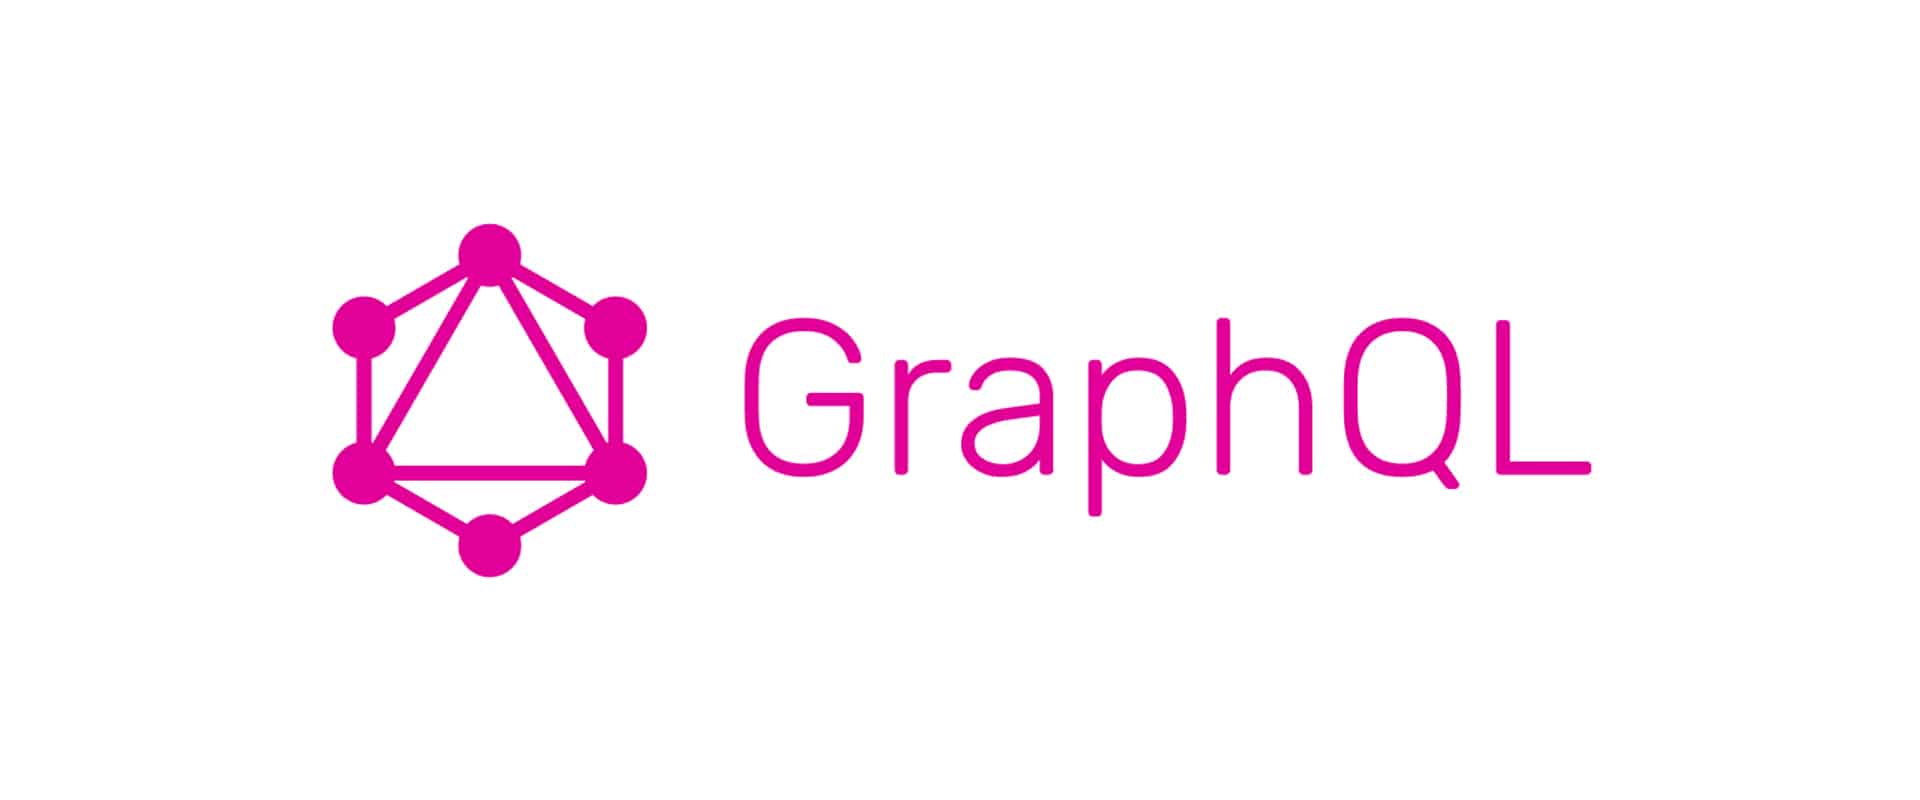 GraphQL und Daten-Querys